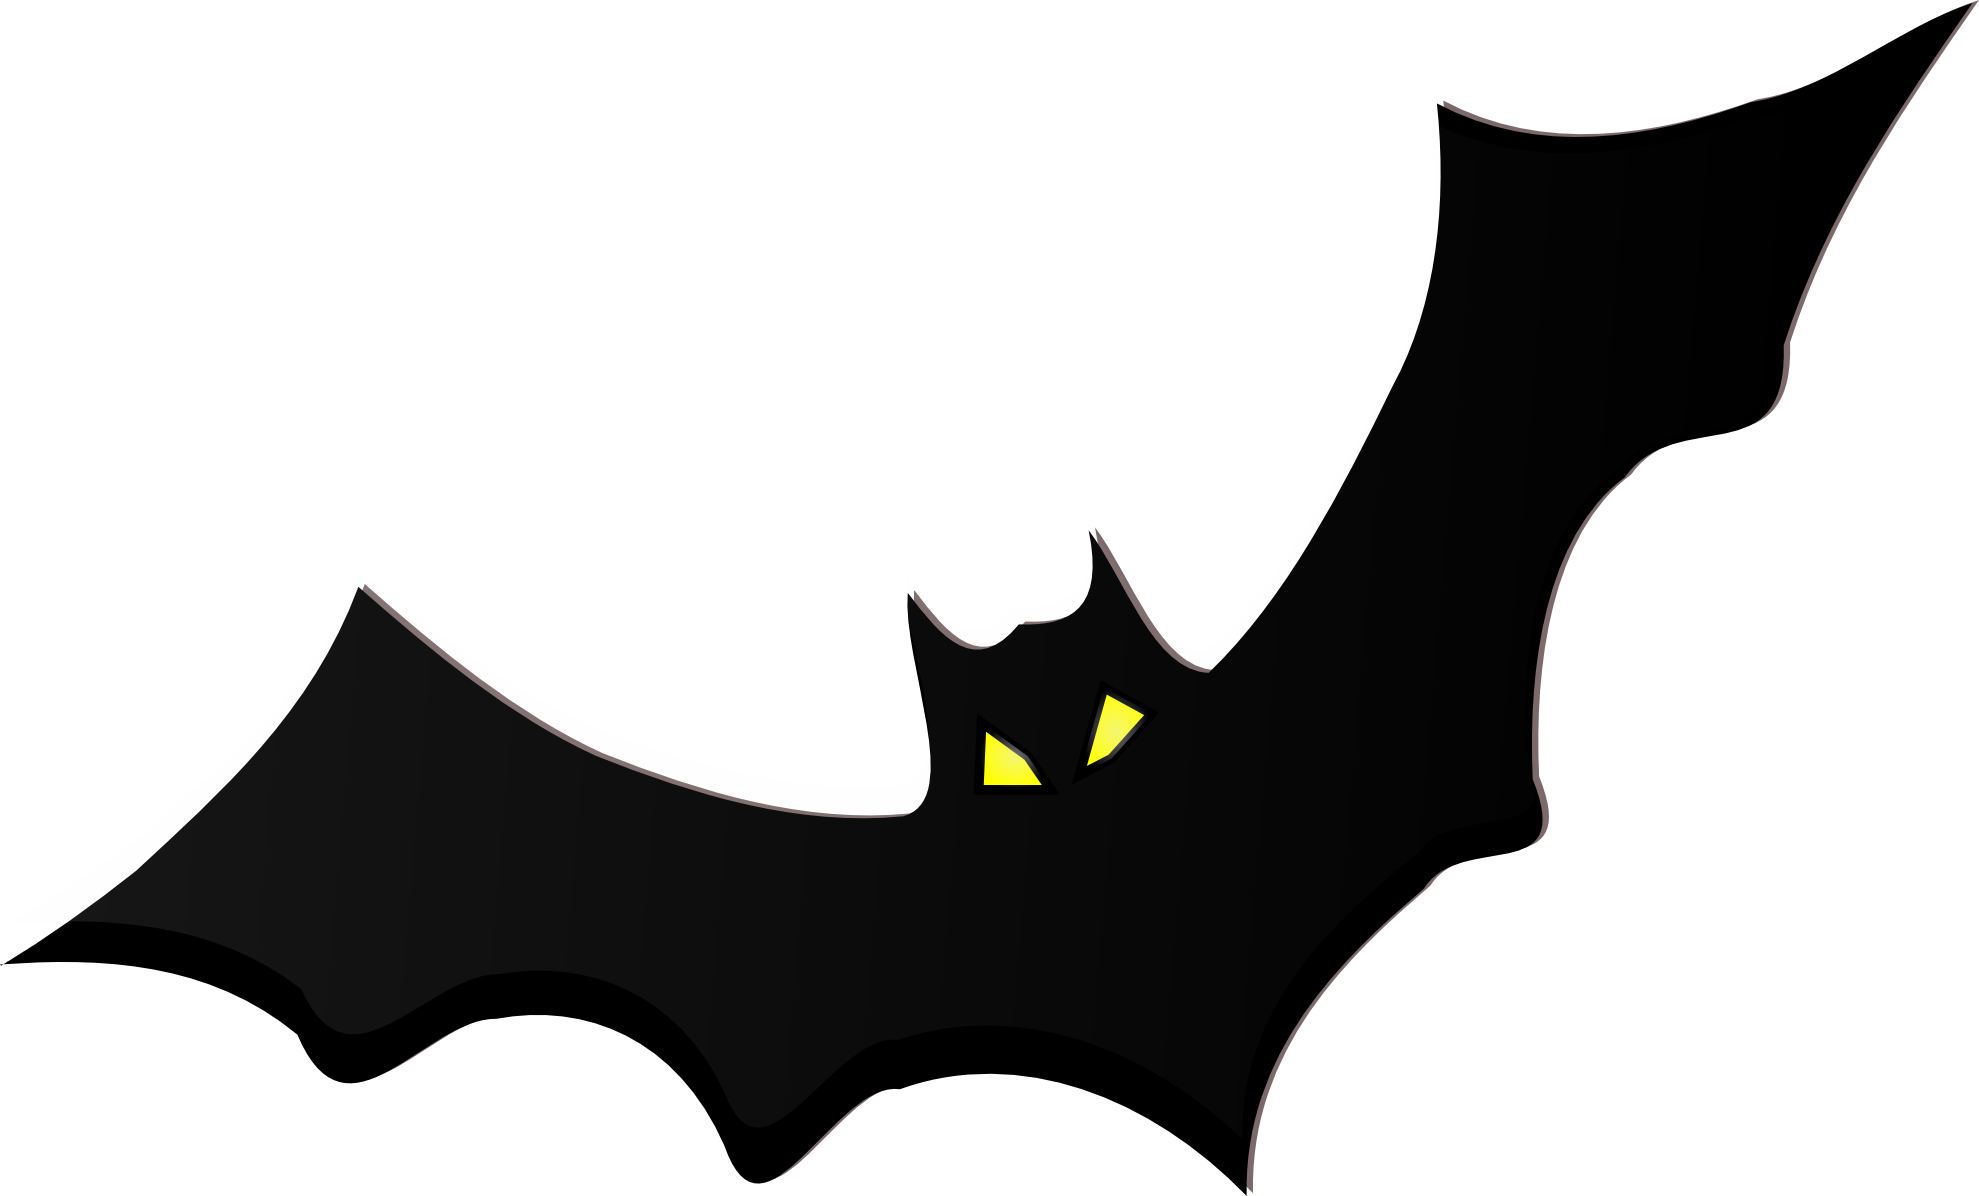 Free Bat Clip Art